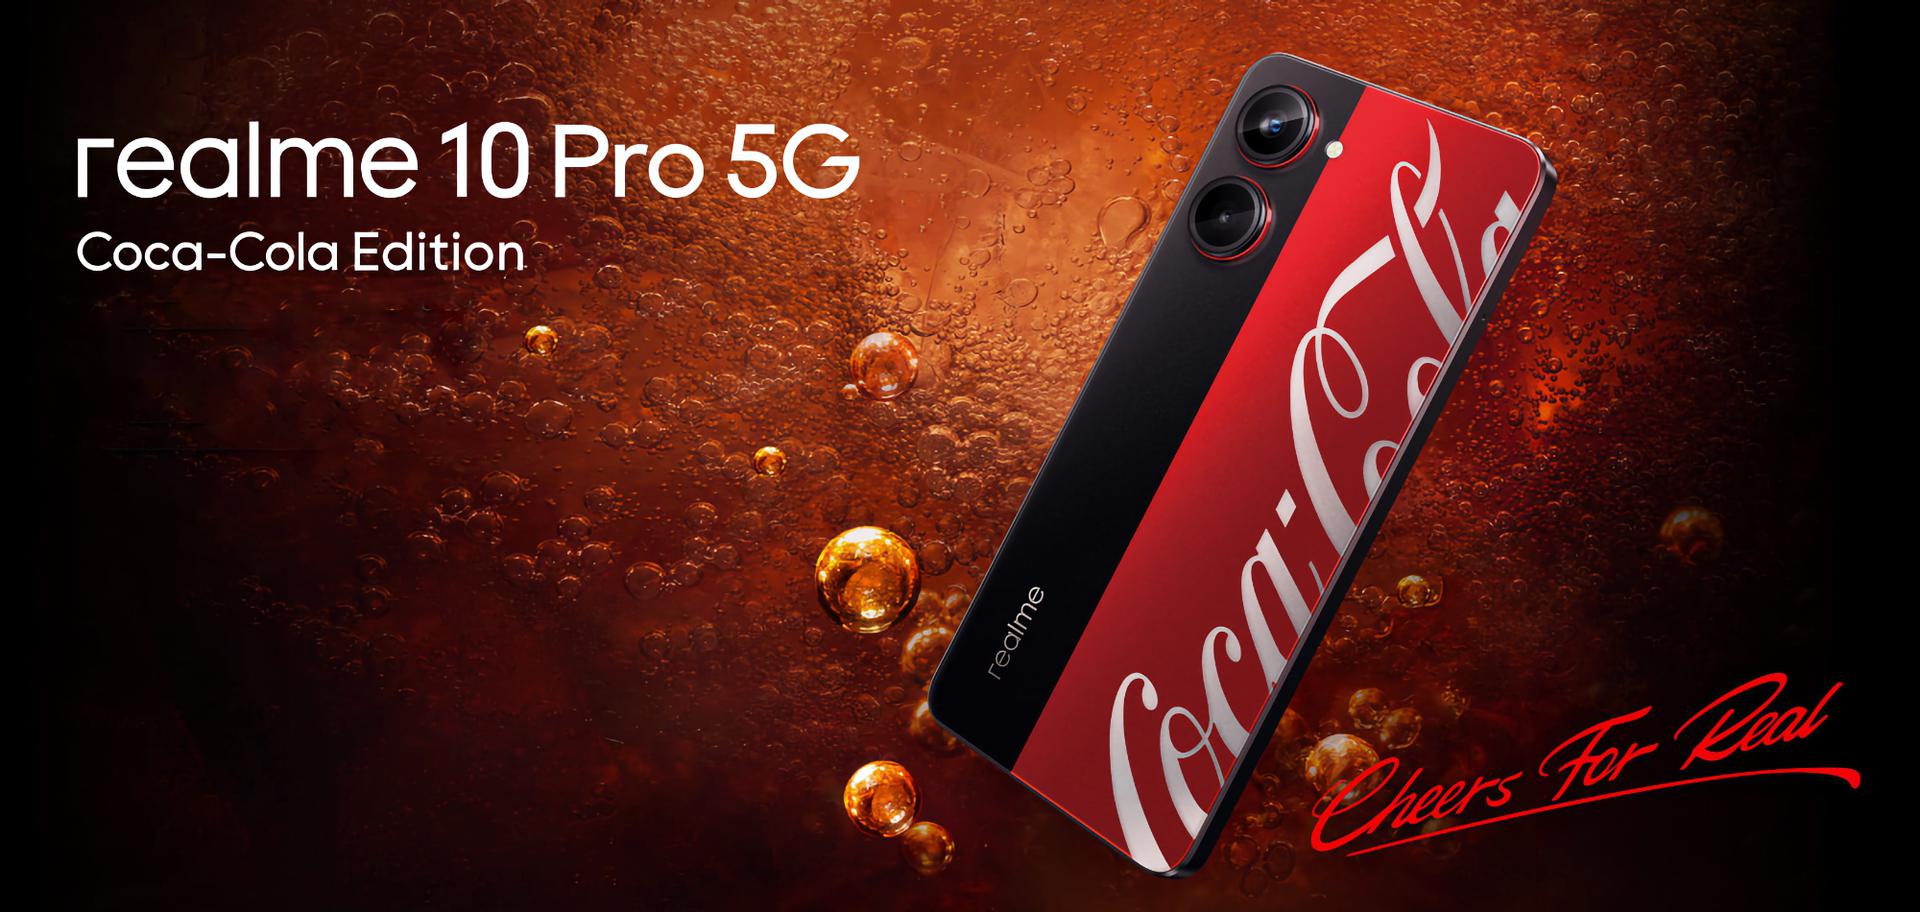 Insider pokazał wideo przedstawiające realme 10 Pro 5G Coca Cola Edition: specjalną wersję smartfona realme 10 Pro 5G z ekranem 120 Hz i układem Snapdragon 695